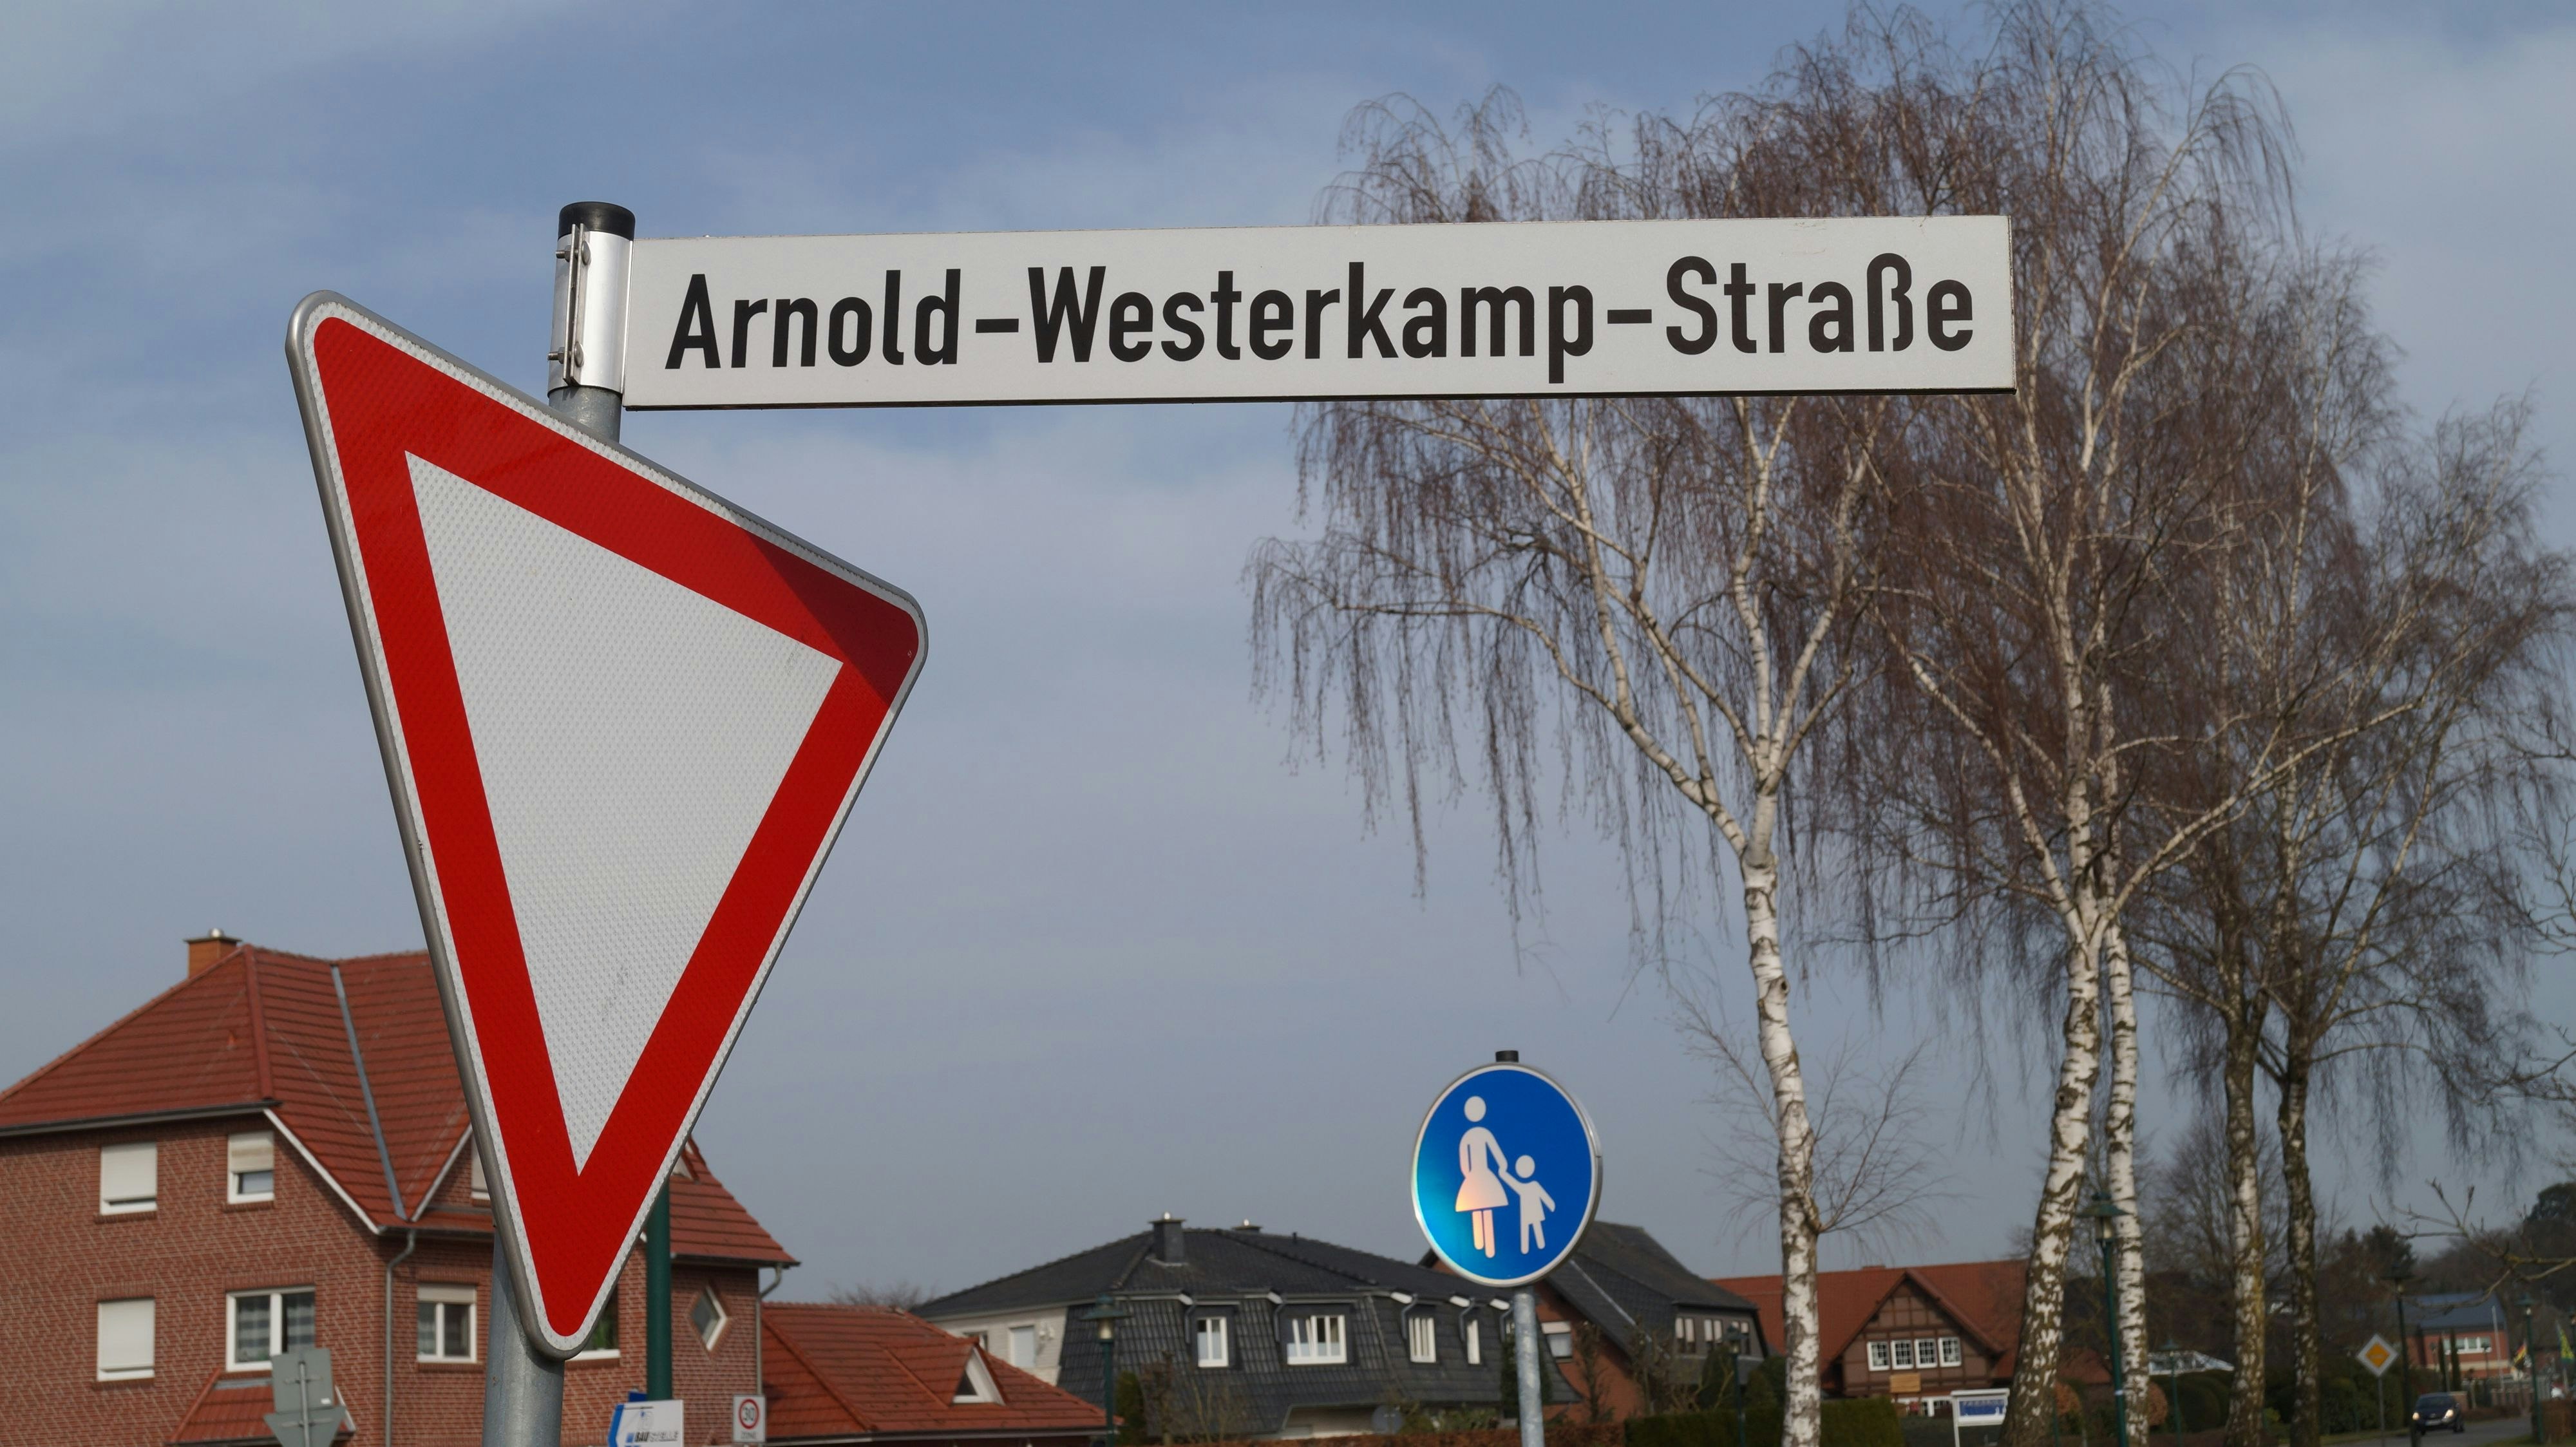 Grund für die Diskussion: Ein Eigentümer an der Arnold-Westerkamp-Straße in Lutten wünscht eine Änderung des Bebauungsplans. Dabei ist der erst 4 Jahre alt. Foto: C. Meyer